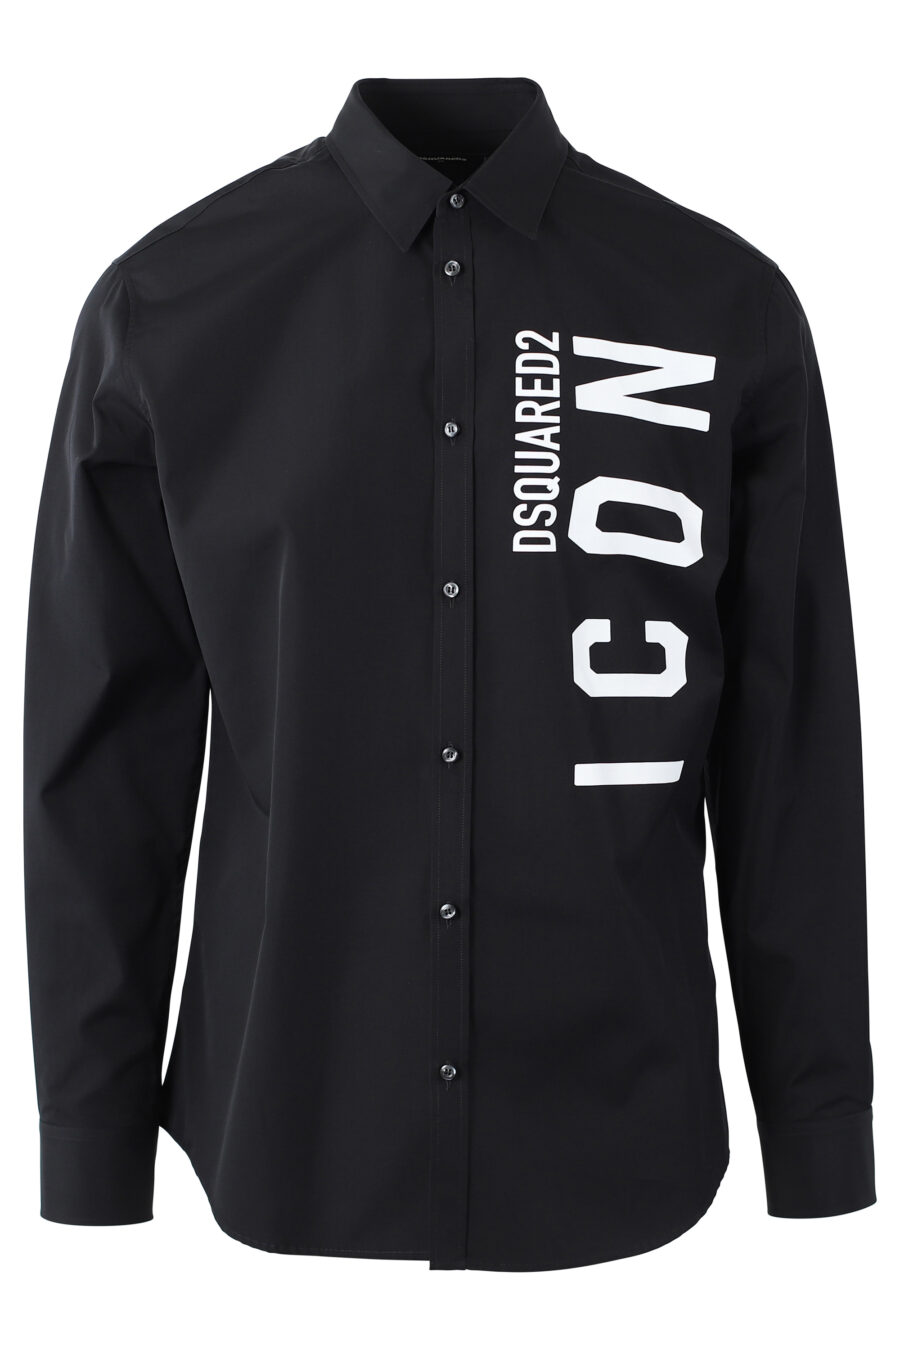 Chemise noire avec double logo vertical "icon" maxilogo - IMG 1102